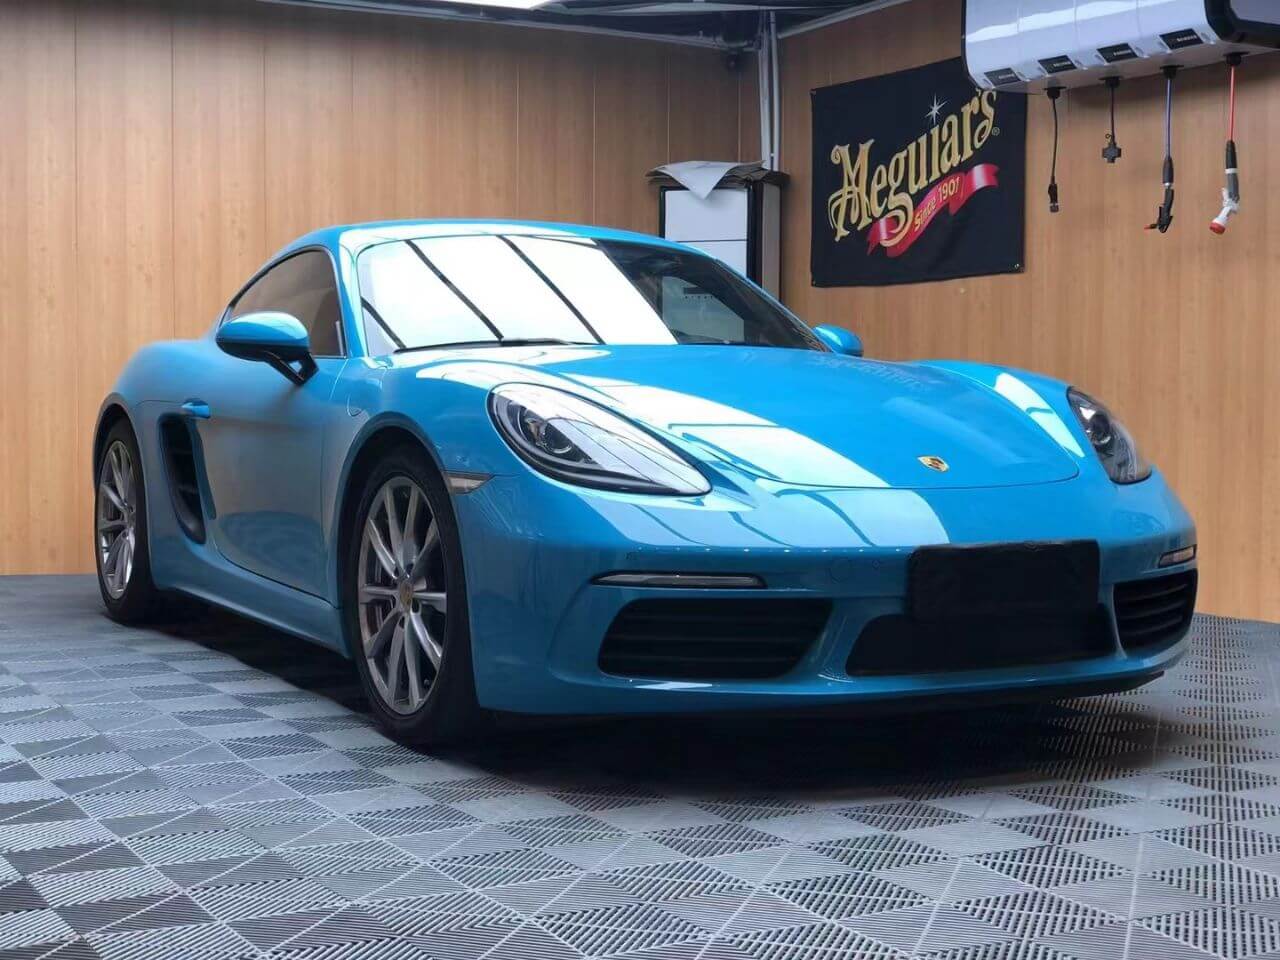 Porsche Gloss Crystal Miami Blue Car Wrap